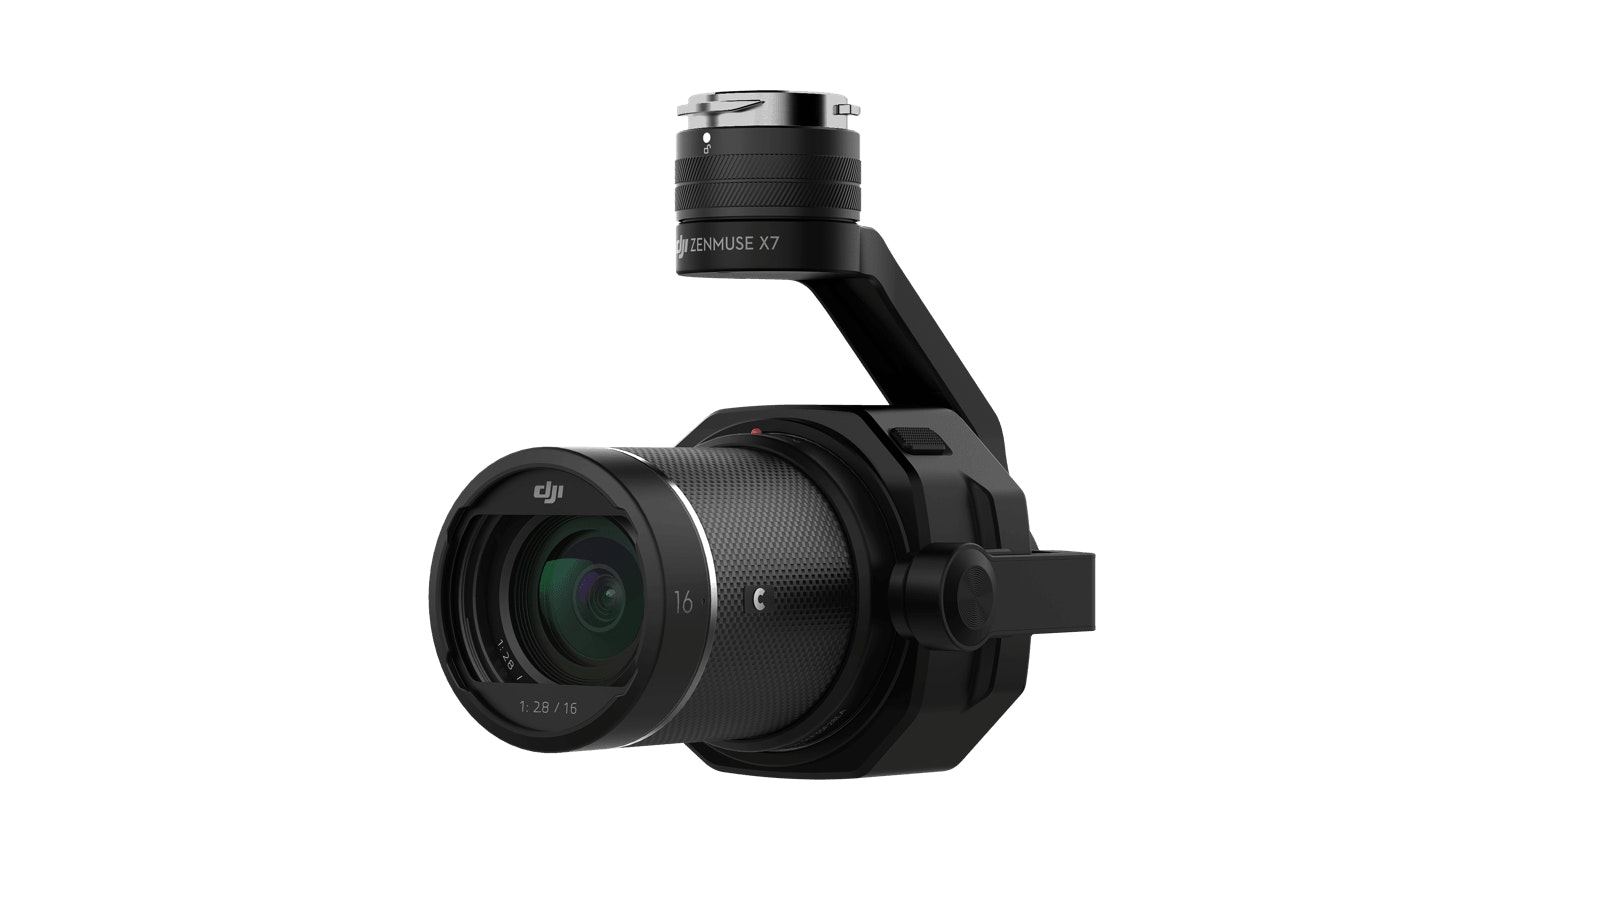 Dji Zenmuse X7 compacta con sensor super 35 y gimbal integrado video foto en hd calidad profesional compatible drones inspire 2 6k cinemadng 5.2k apple prores suspendida 4k 24